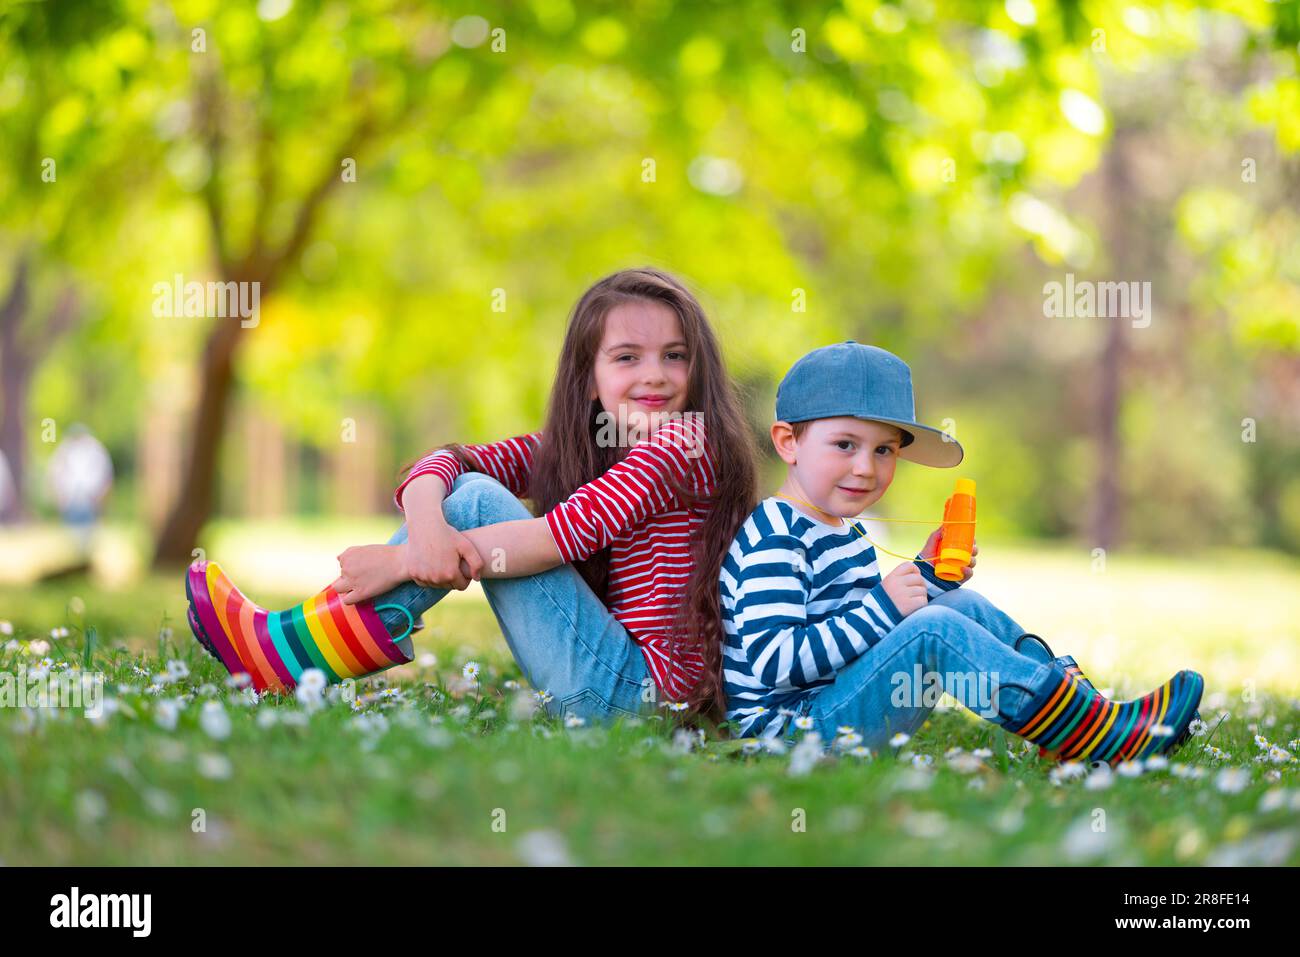 Fröhliche Kinder Junge und Mädchen in Gummistiefeln spielen draußen im grünen Park mit blühenden Blüten Stockfoto